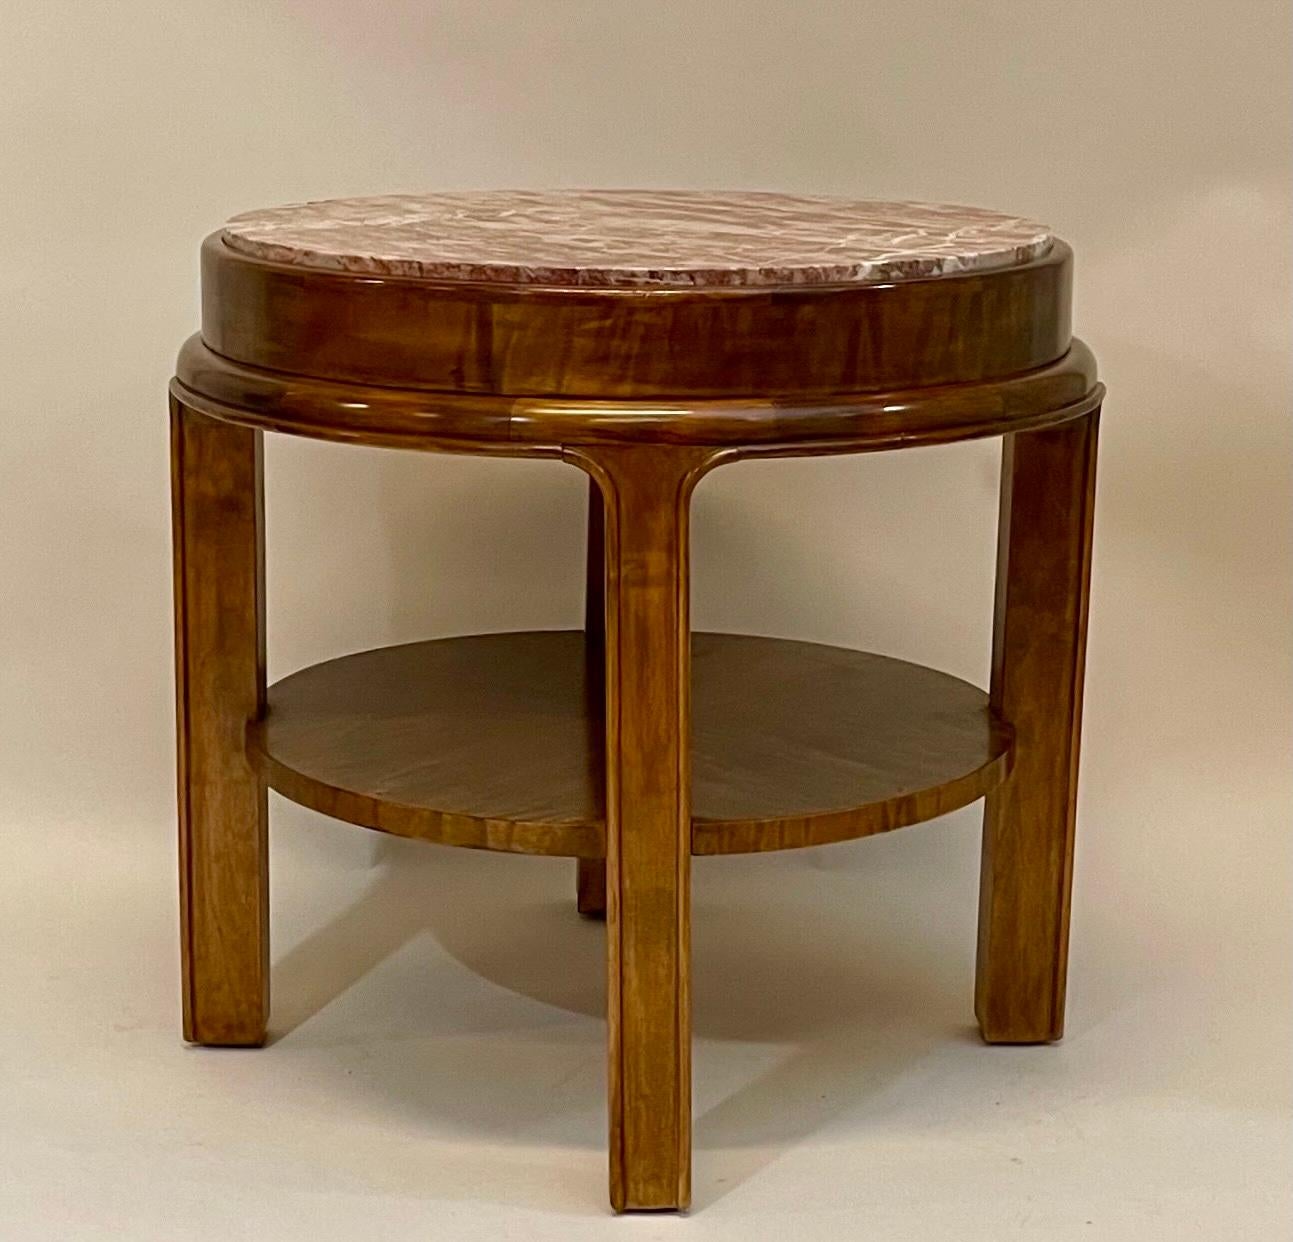 Unser Tisch wurde aus massiver und furnierter Birke gefertigt, in einem satten Braun gebeizt und mit einer Platte aus böhmischem Breccia-Marmor gekrönt. Wir datieren es auf die Zeit um 1928 und schreiben den Entwurf Fritz August Breuhaus de Groot